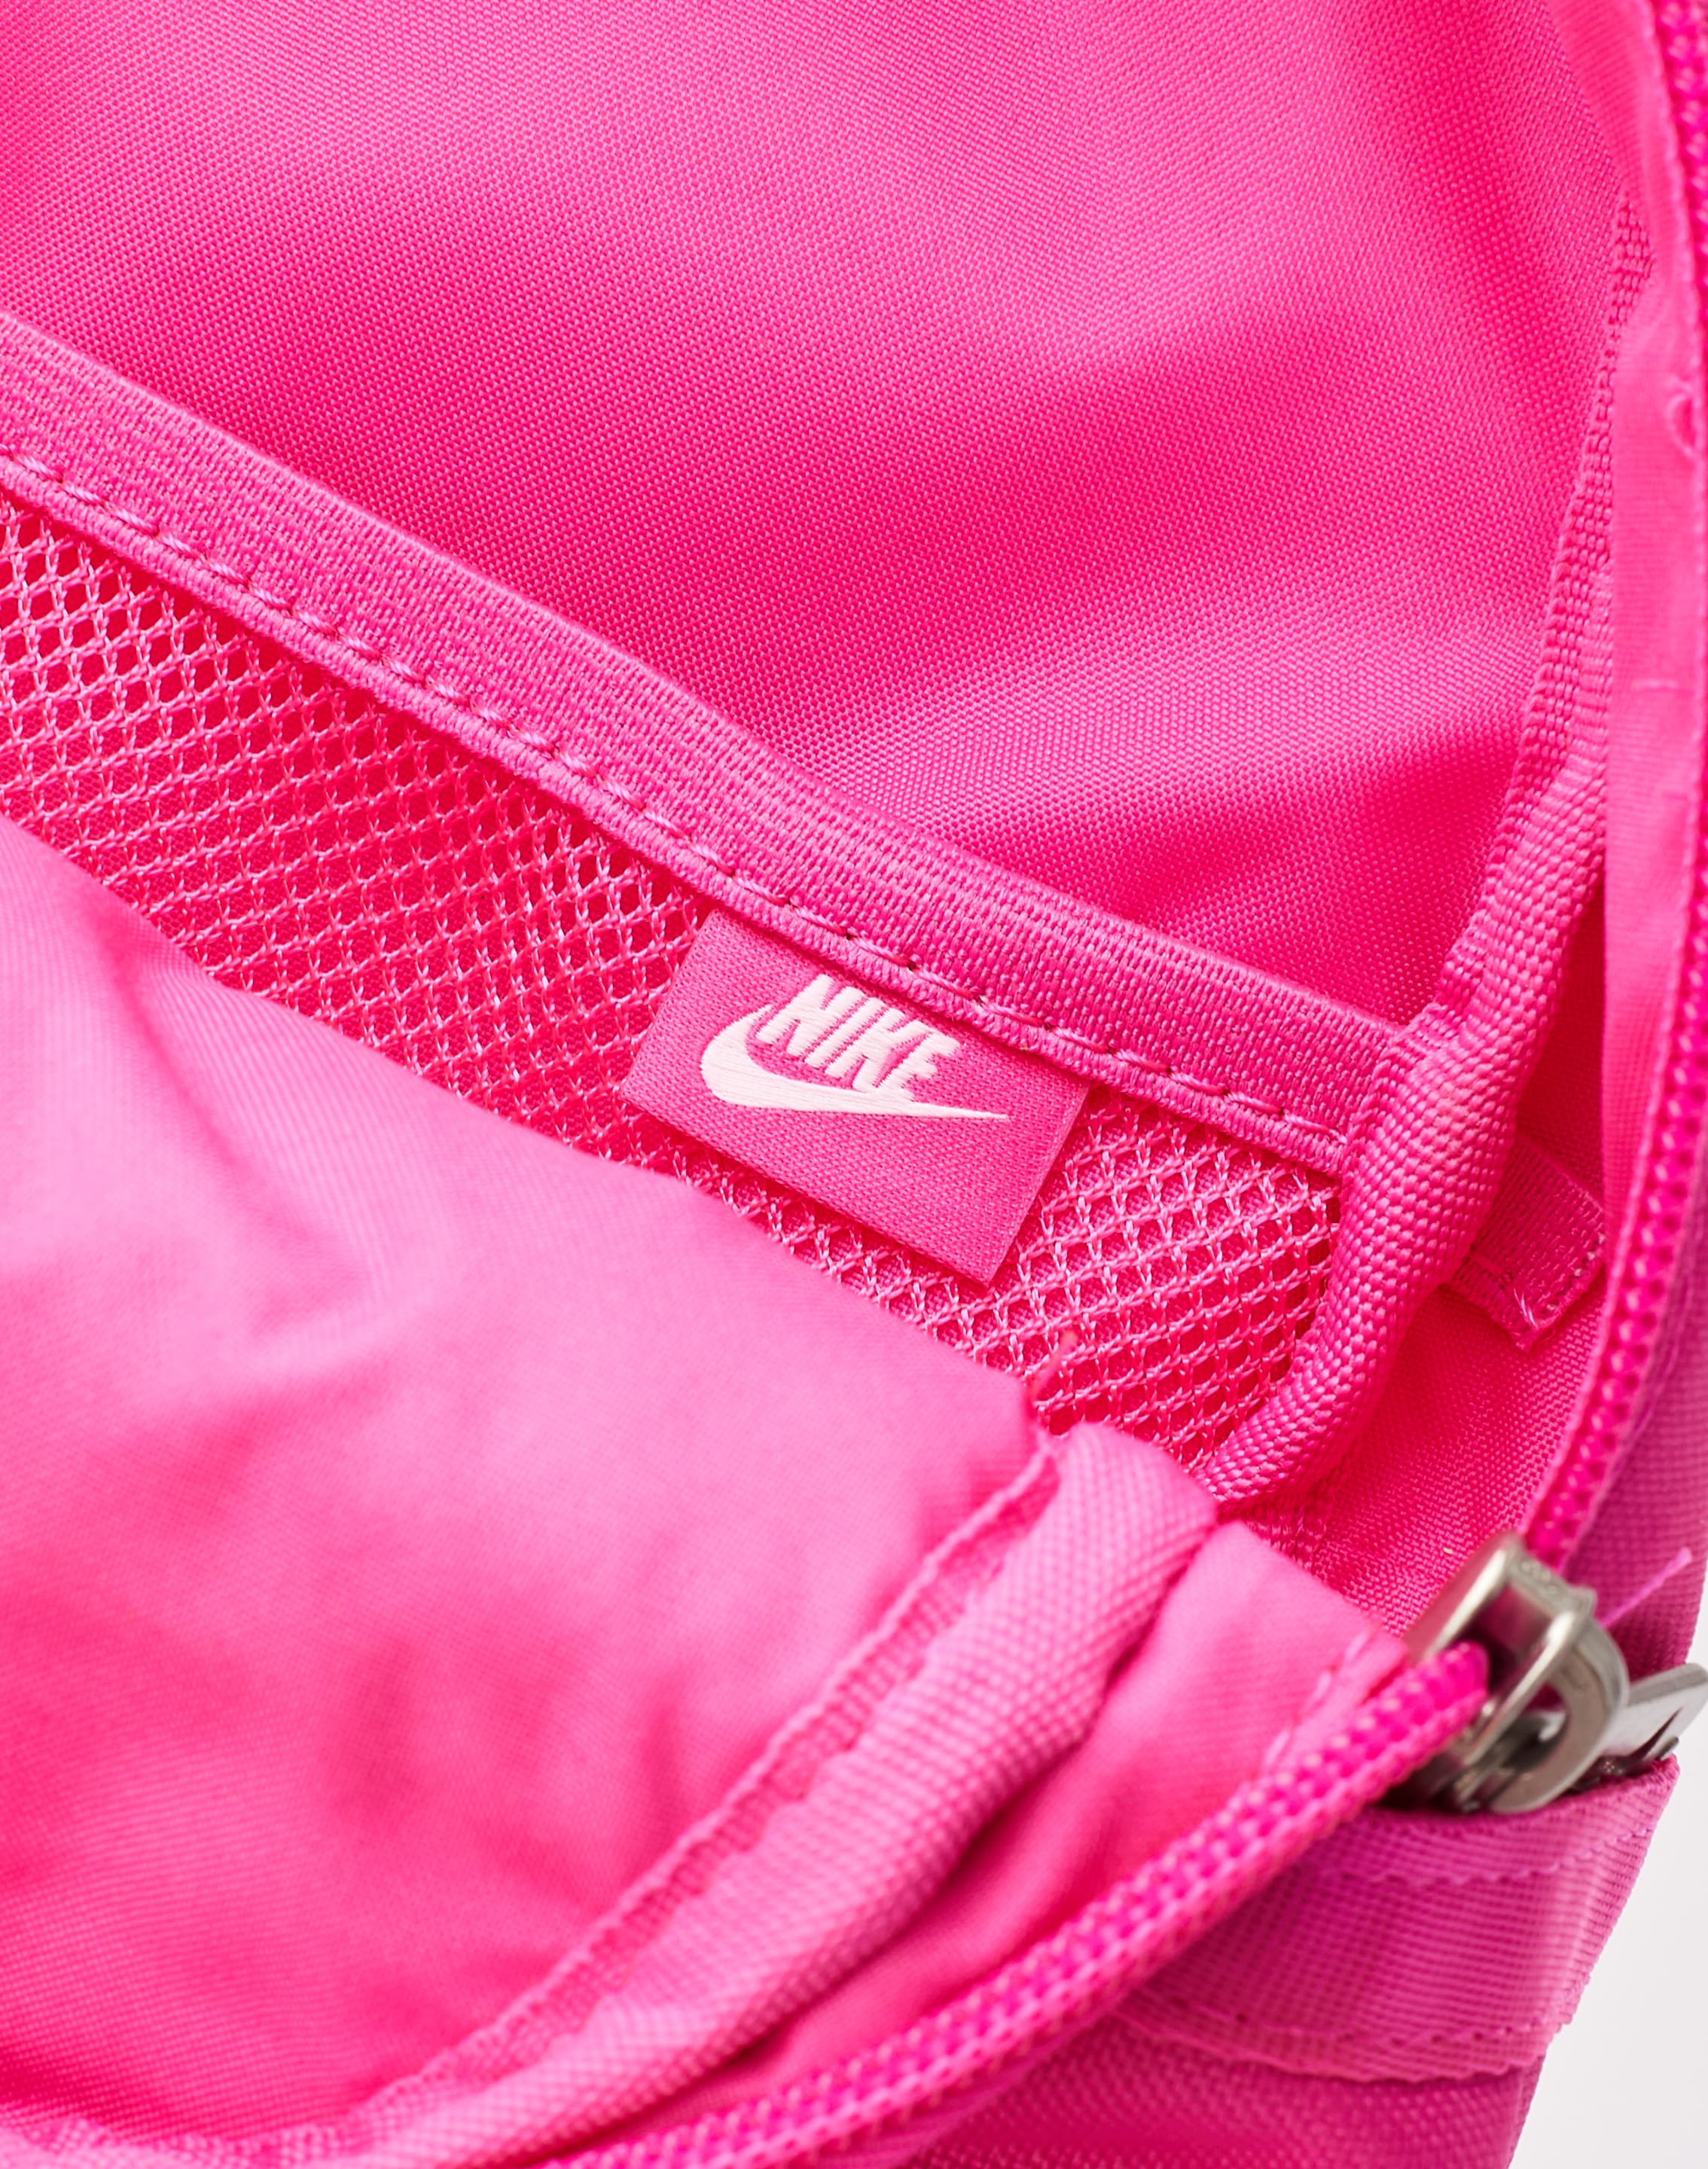 Nike Futura 365 mini backpack in pink